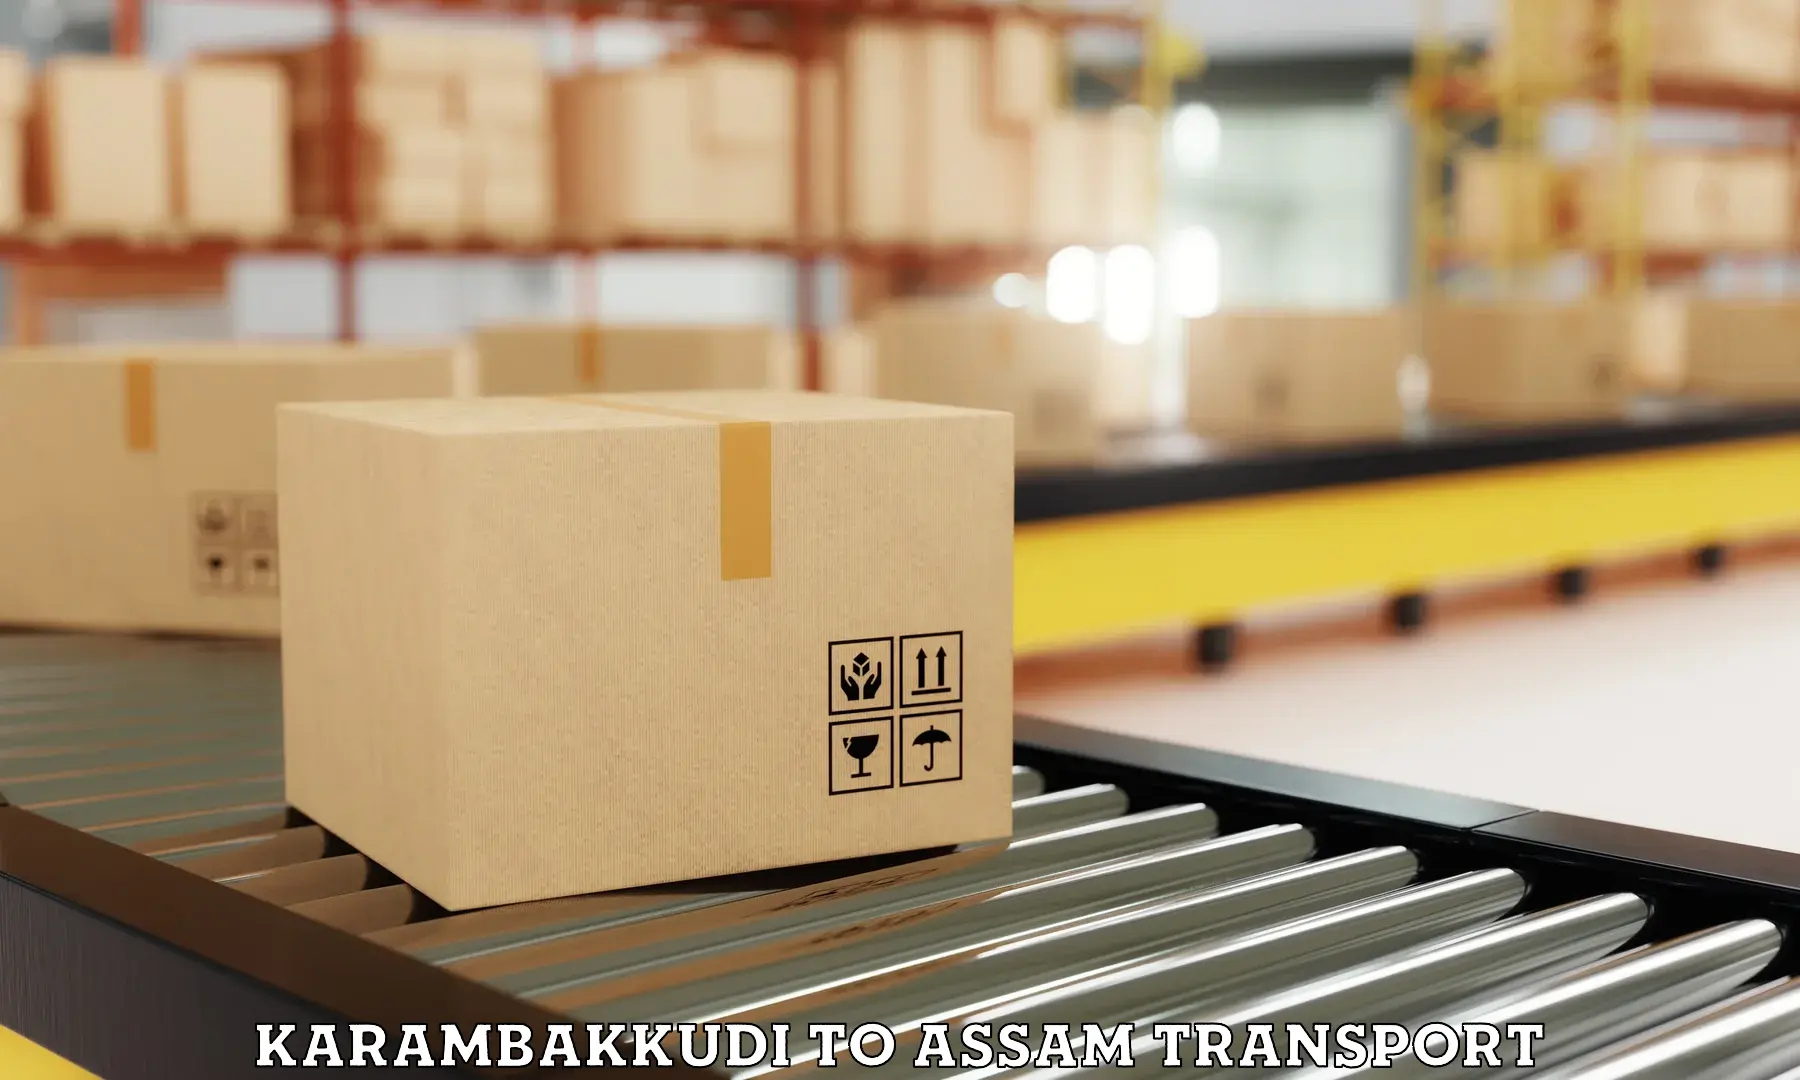 Furniture transport service Karambakkudi to Dibrugarh University